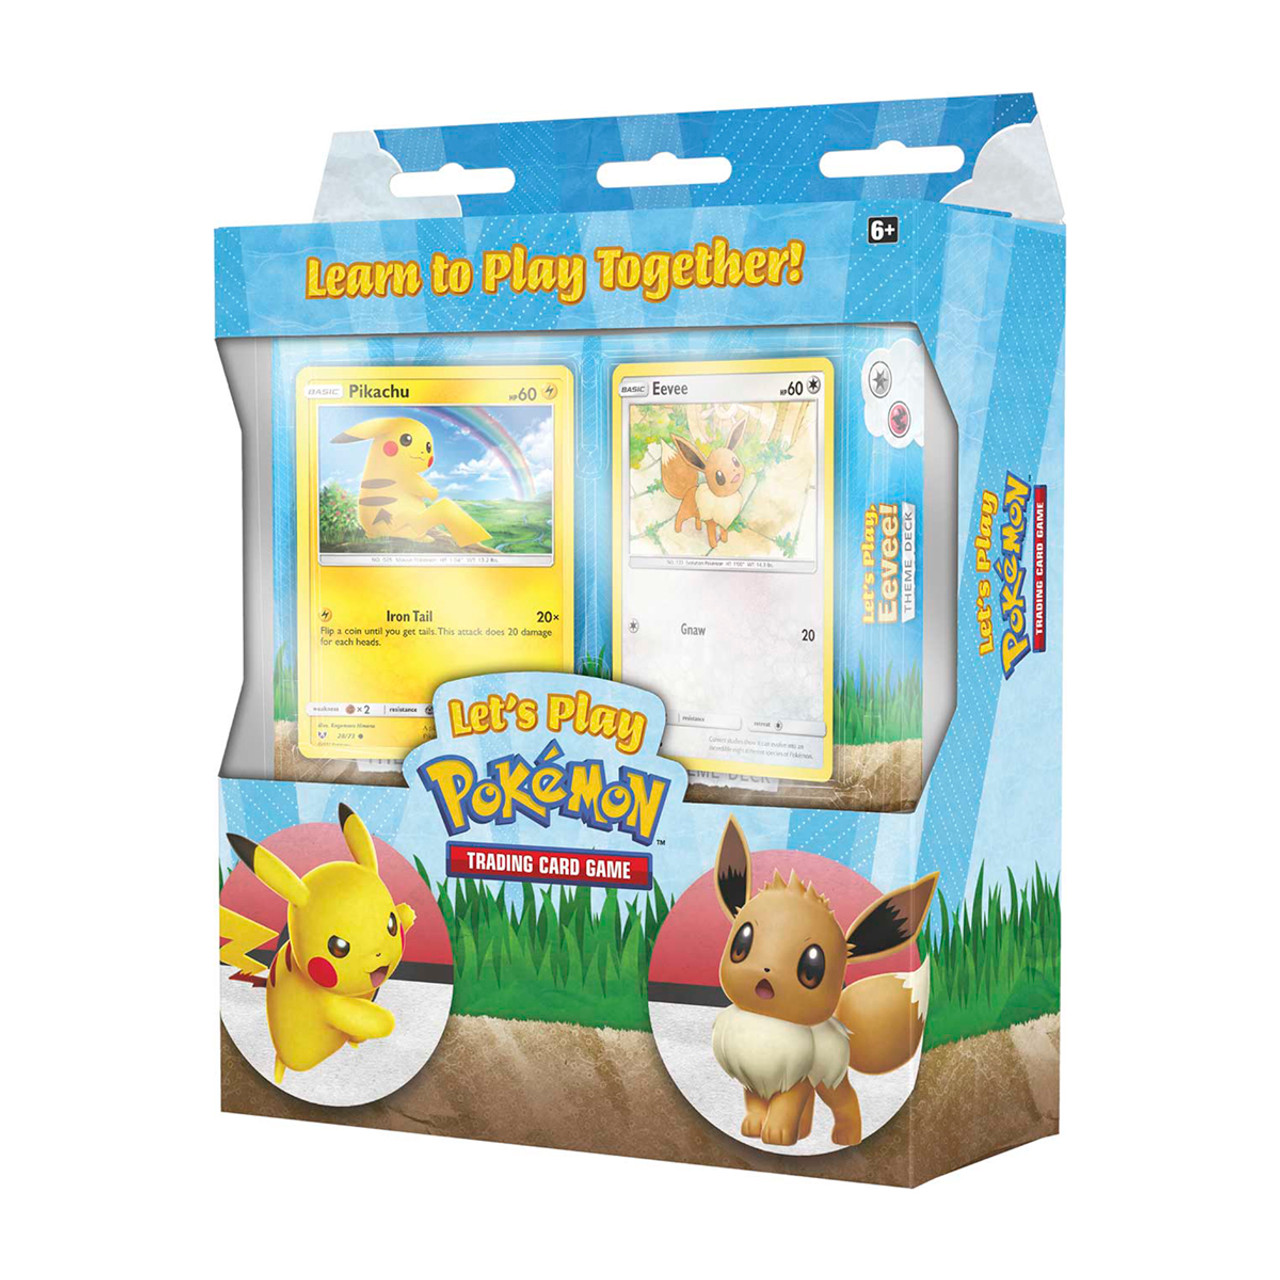  Pokemon - Raikou - Collector's Pin : Toys & Games